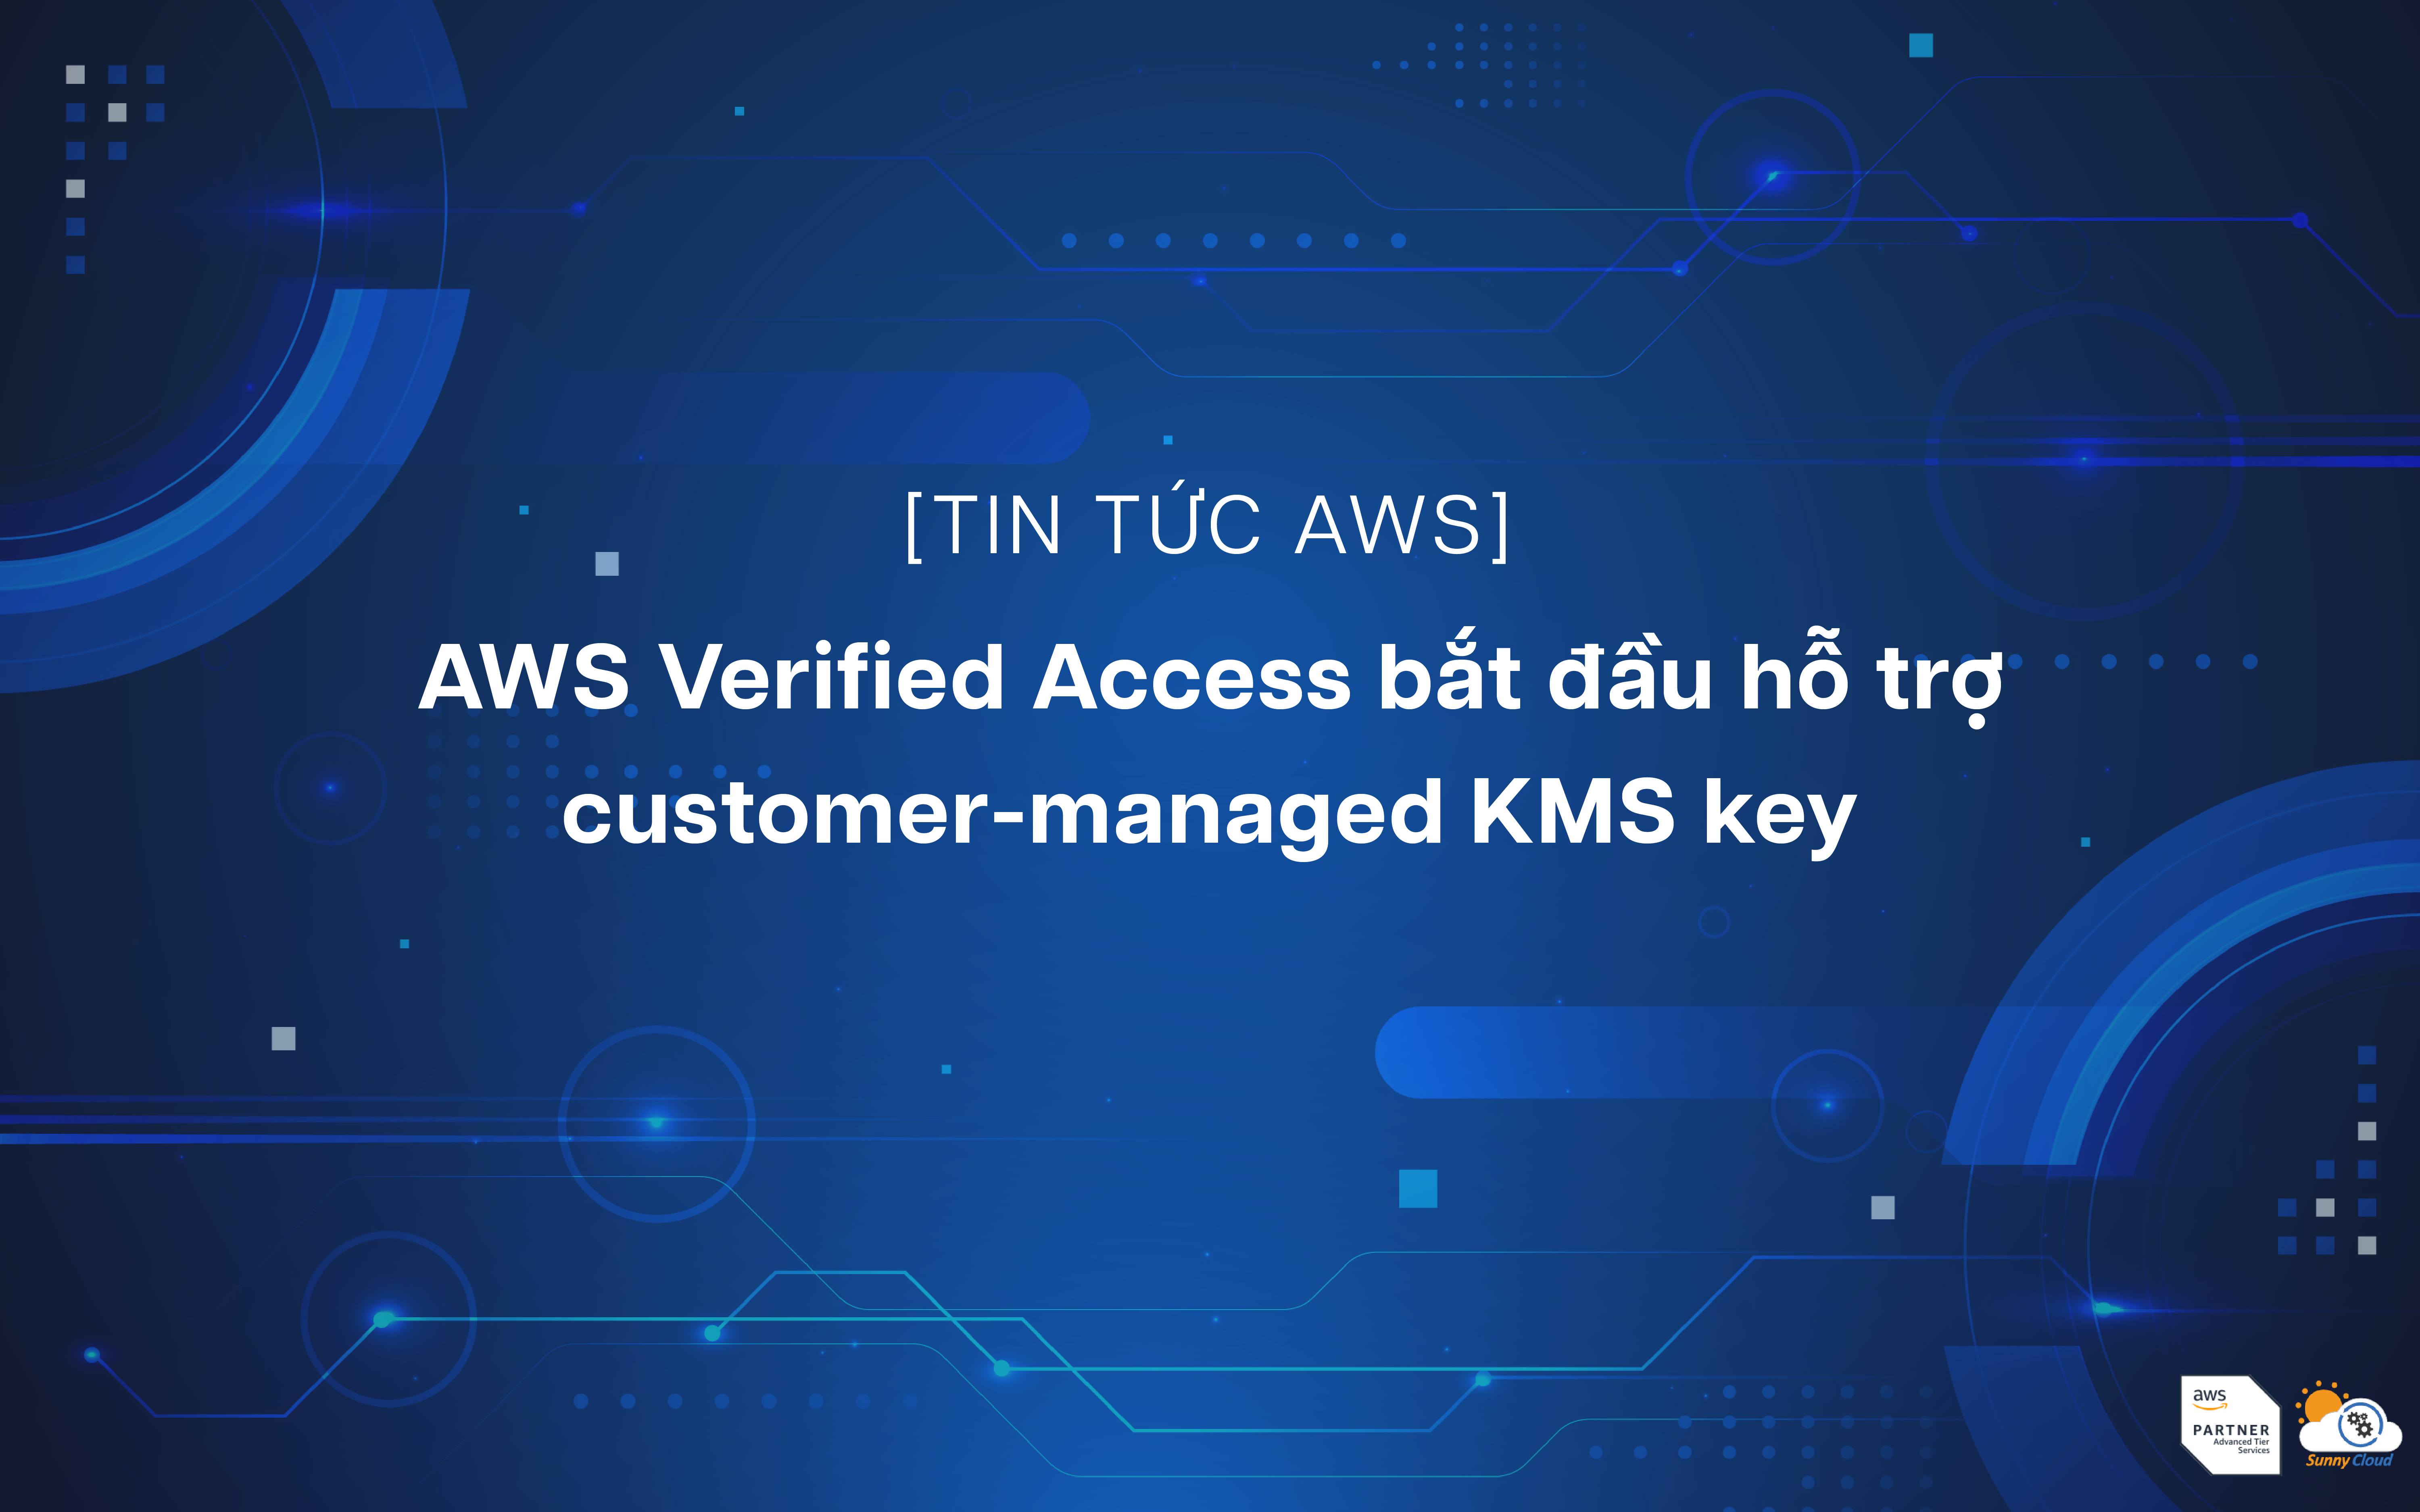 Customer-managed KMS key hiện đã được AWS Verified Access hỗ trợ